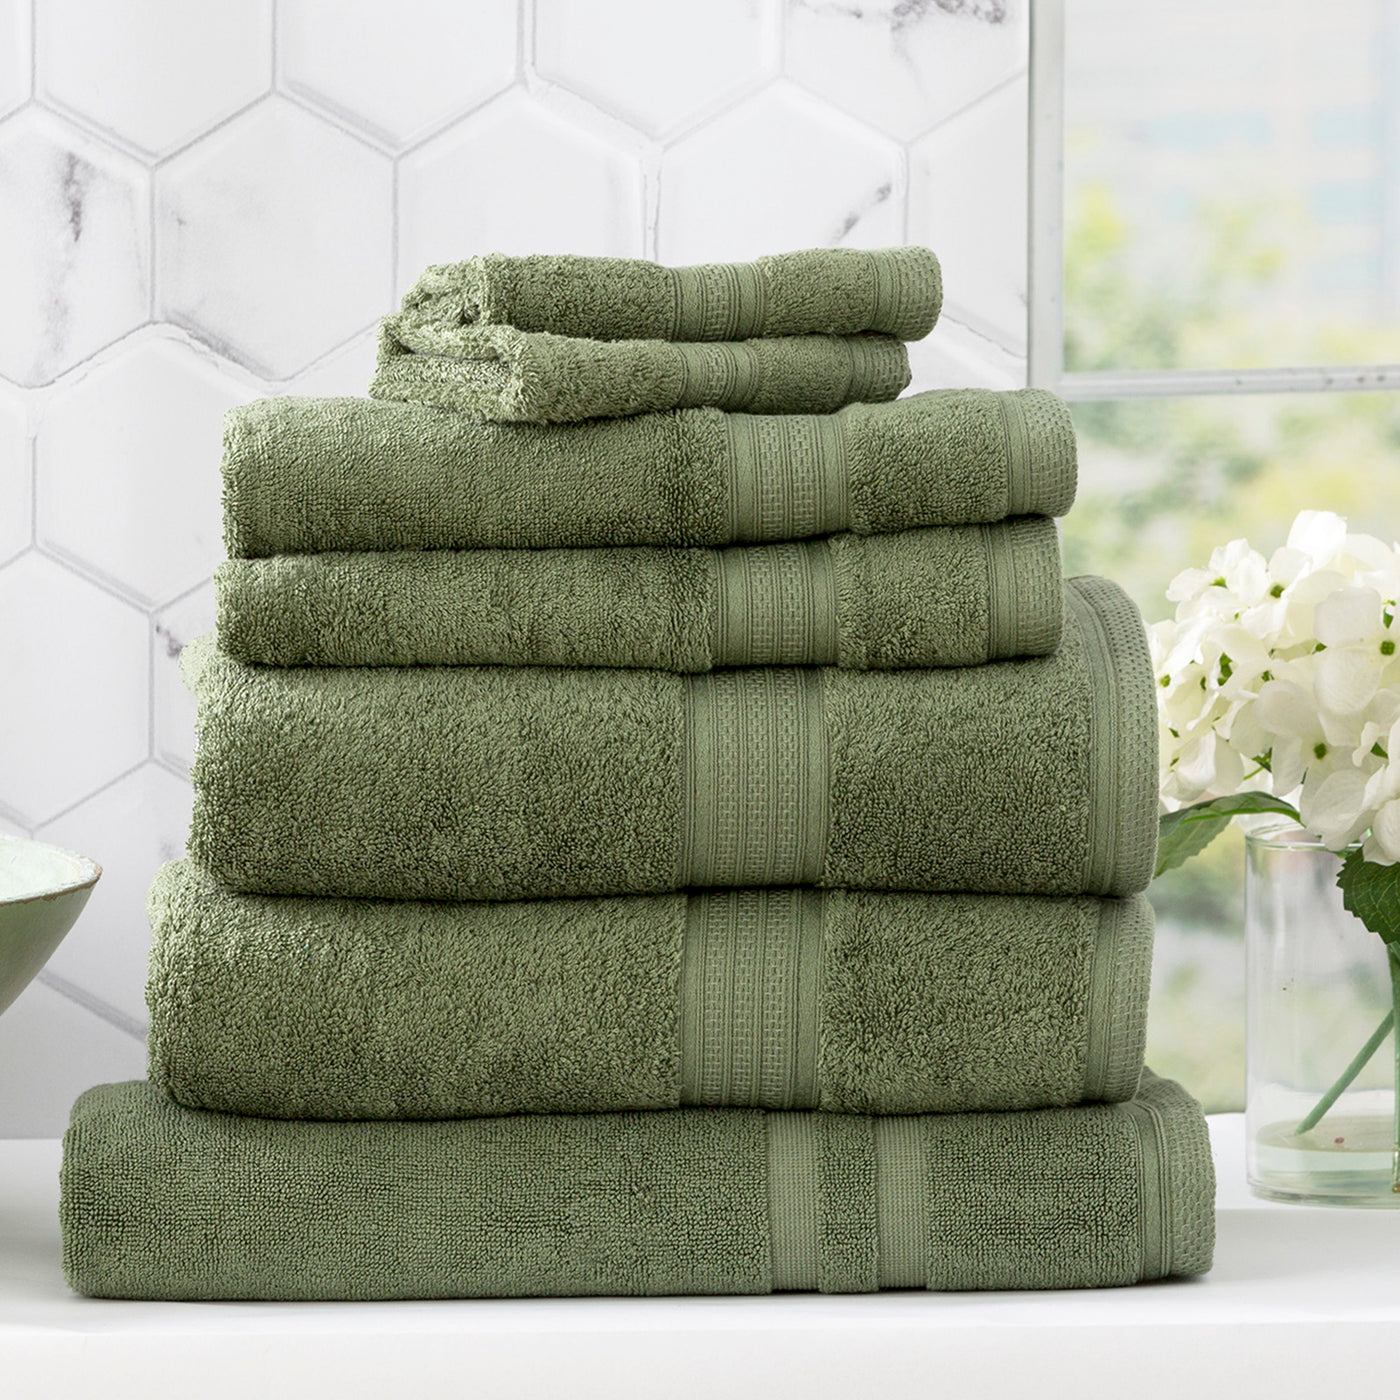 towels-sheridan towels-bath towels-hand towels-quick dry towels-bamboo towels-bathroom towels-best towels australia-green towels